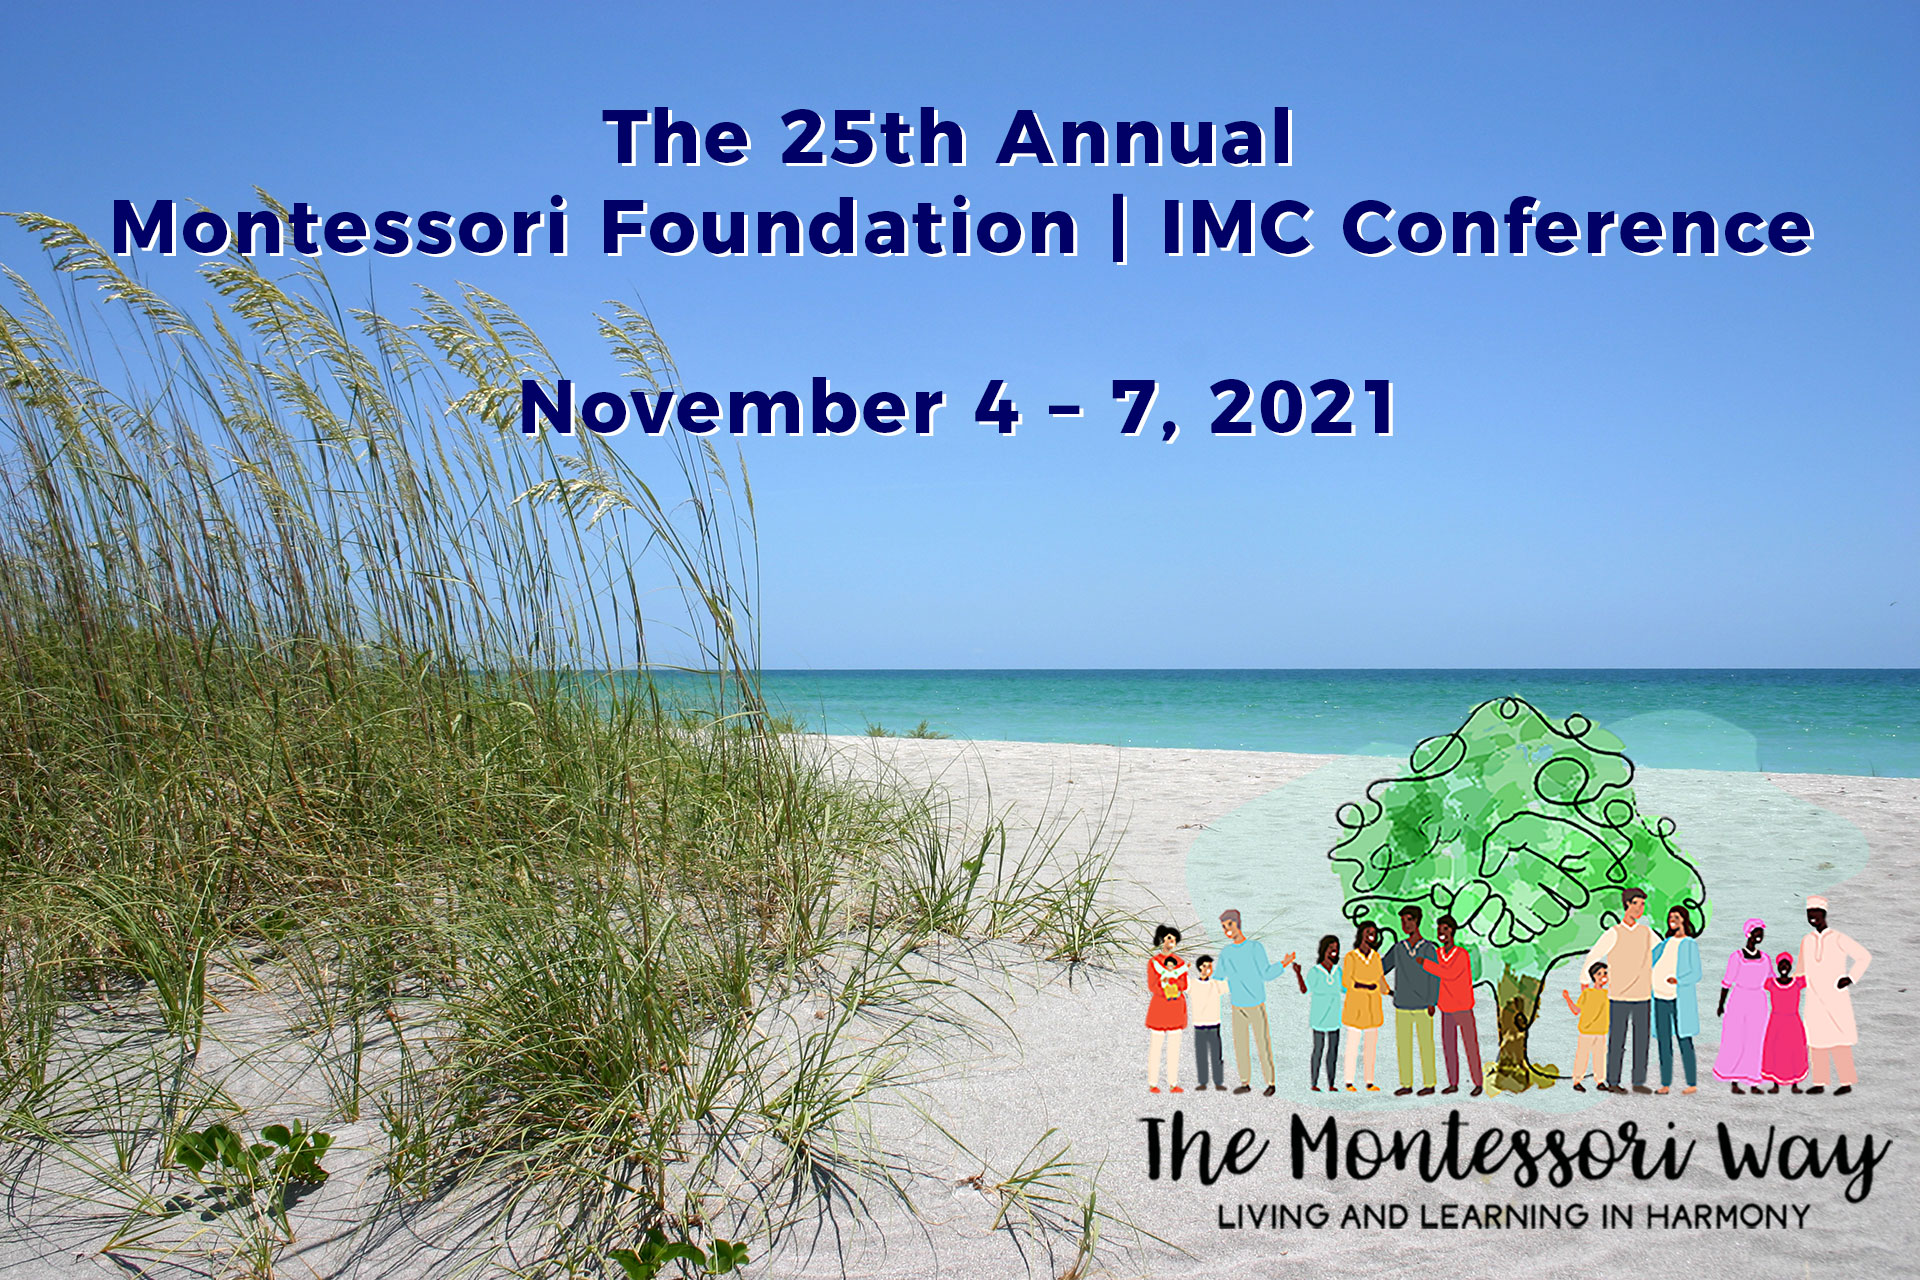 Nov. 4-7, 2021 Montessori Foundation | IMC Conference